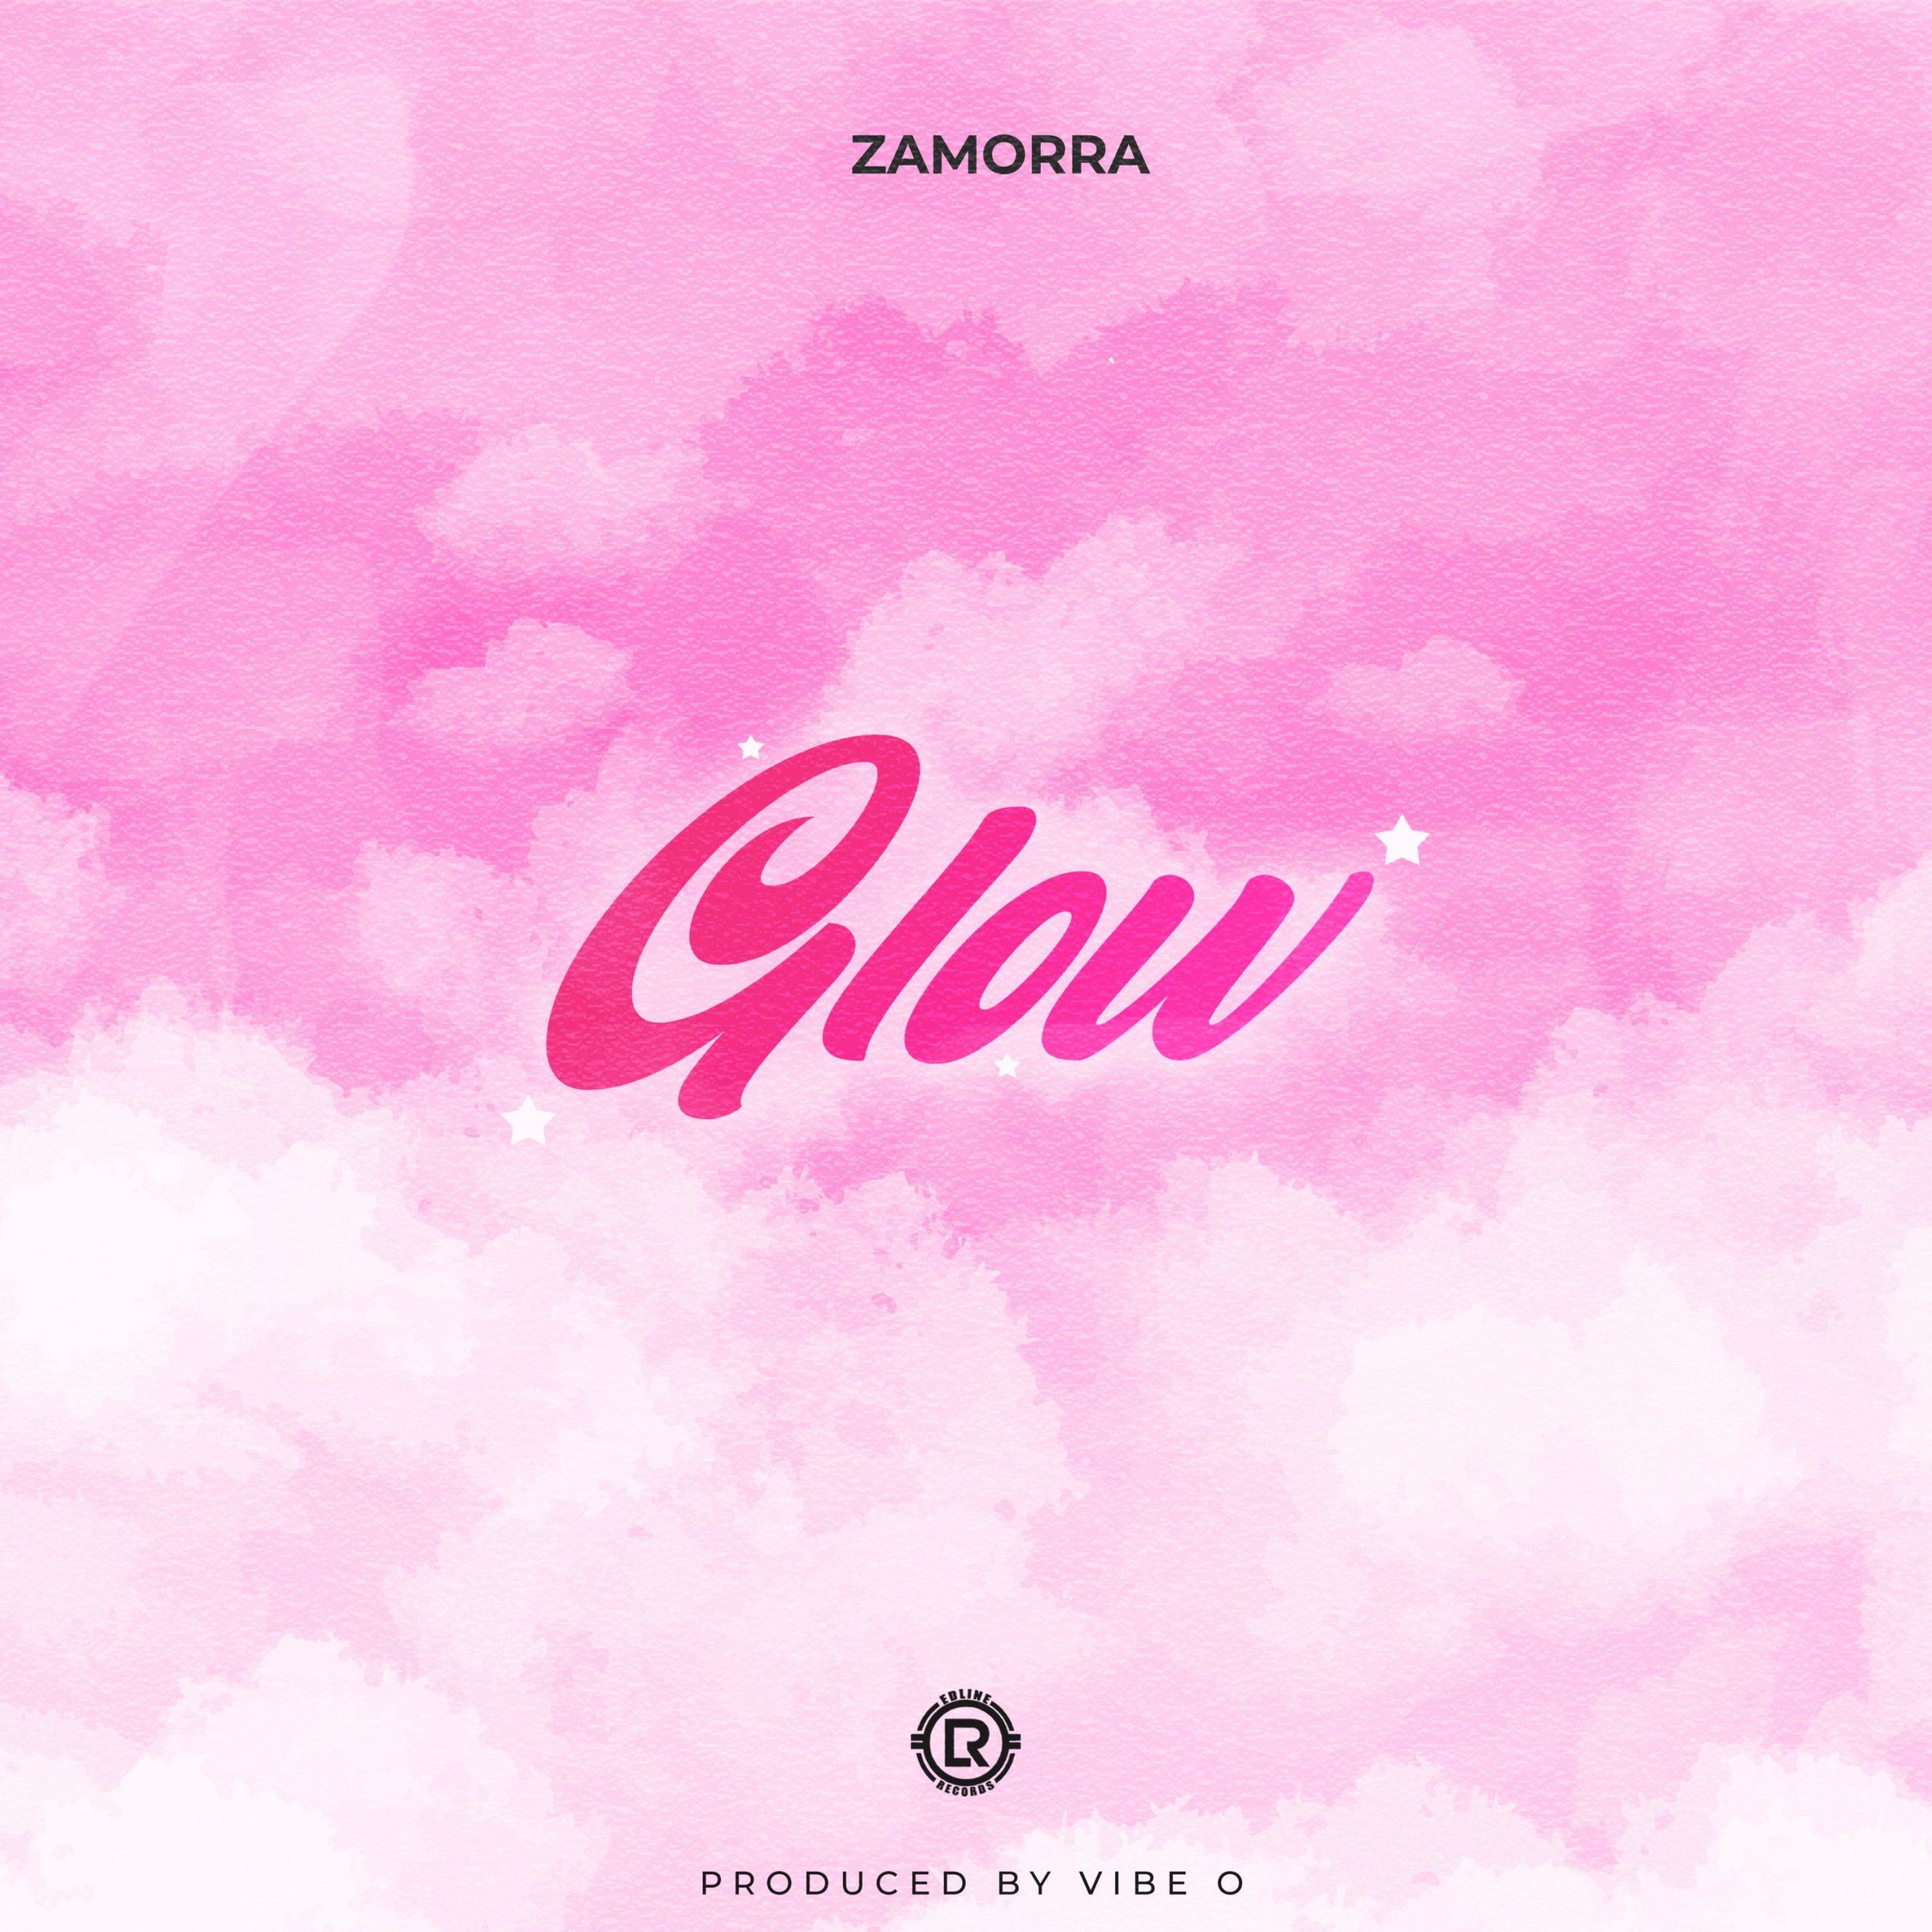 Zamorra — Glow scaled